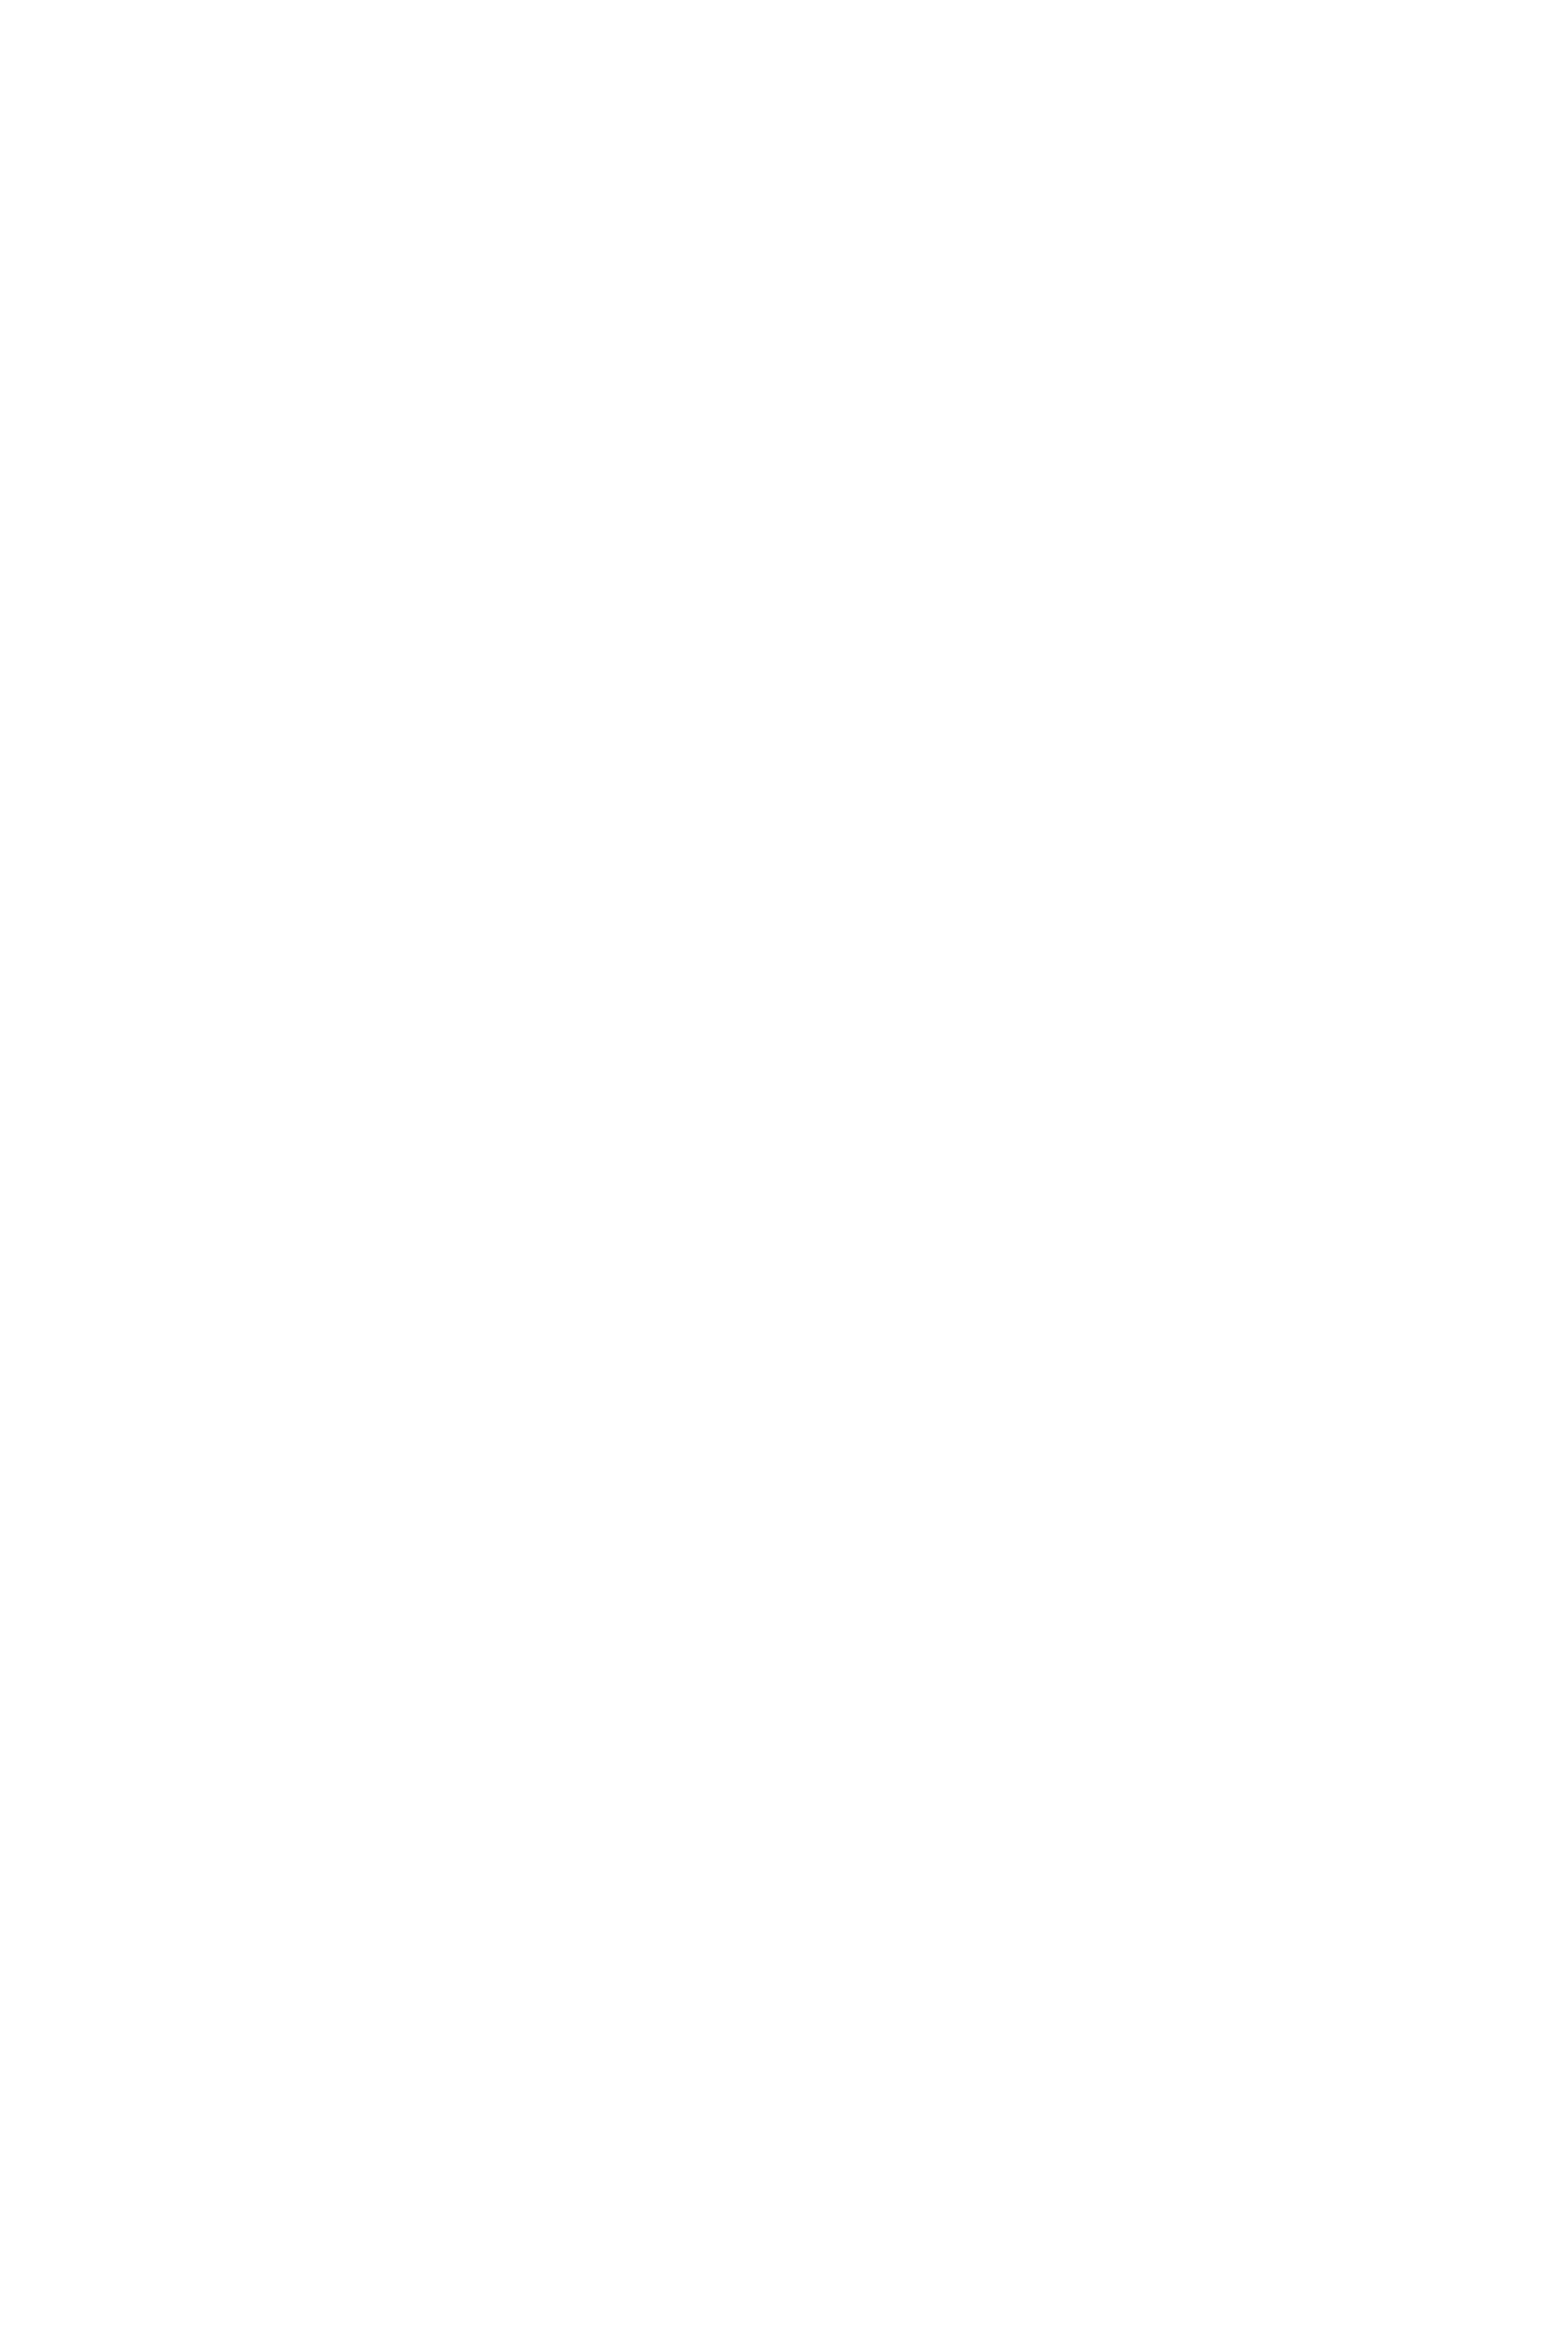 Вязаный джемпер по картине Ван Гога "Звёздная ночь" бренда "Таня Исаева"